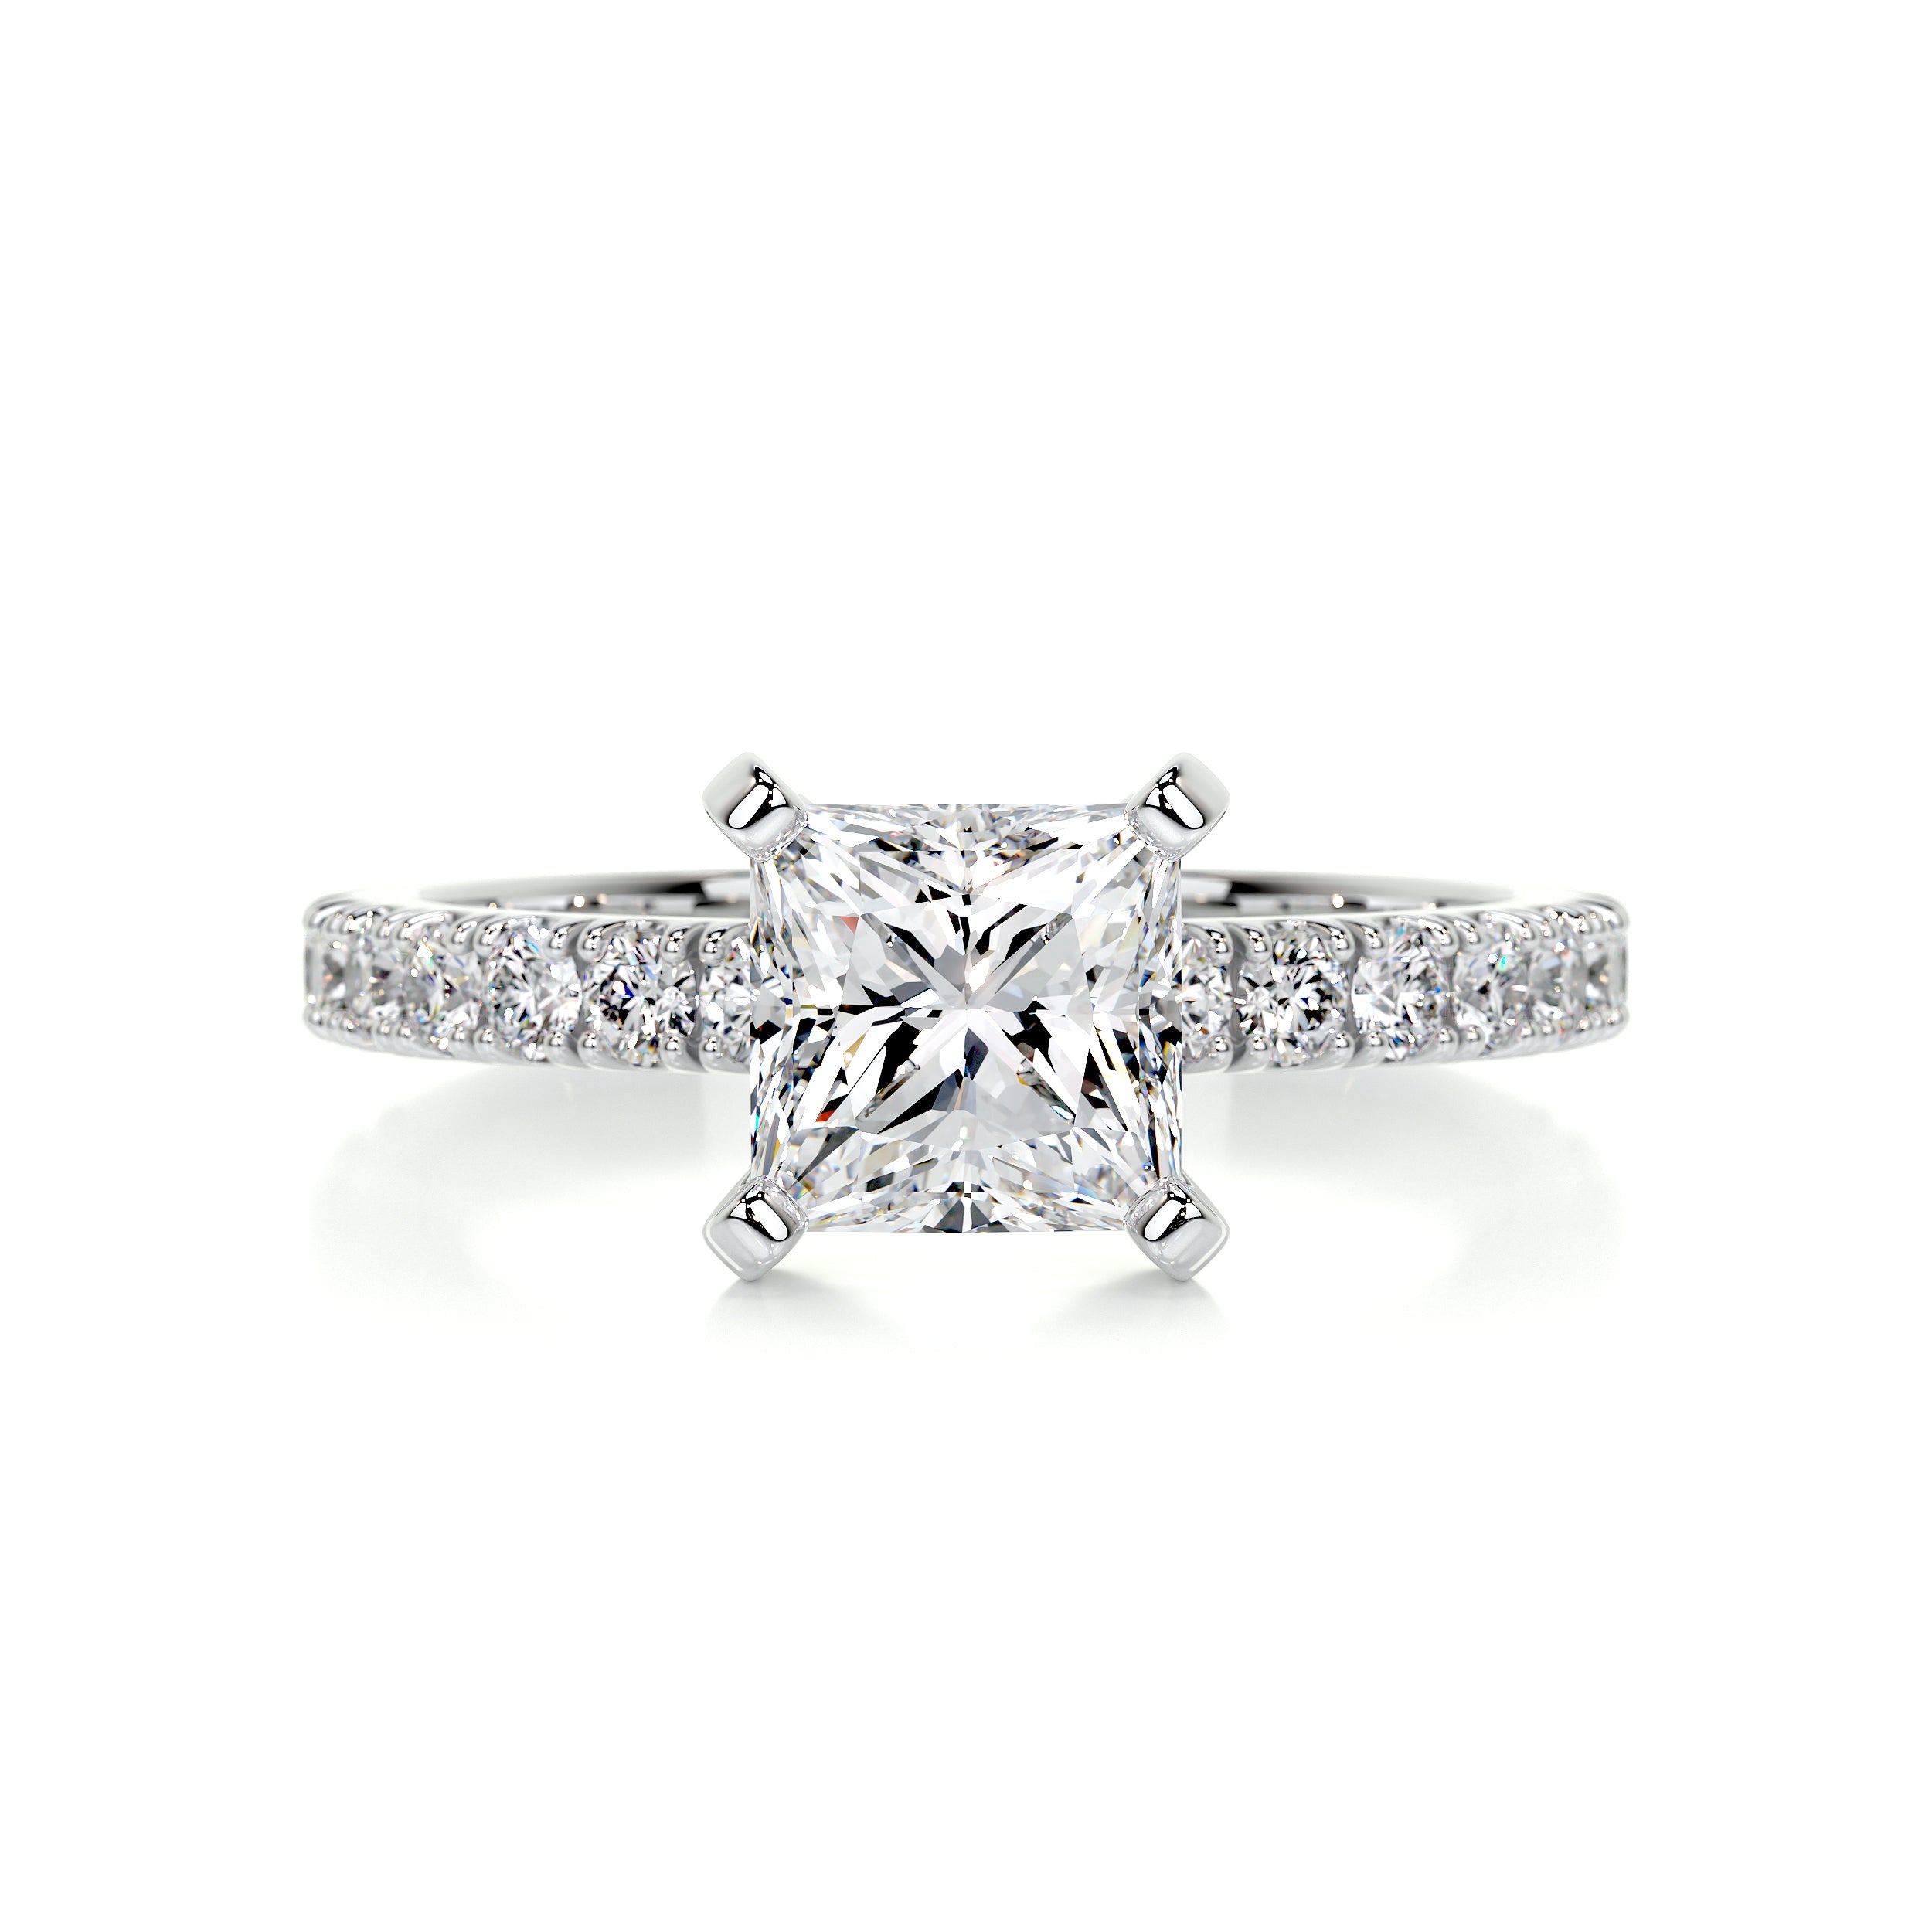 Blair Diamond Engagement Ring   (2 Carat) -18K White Gold